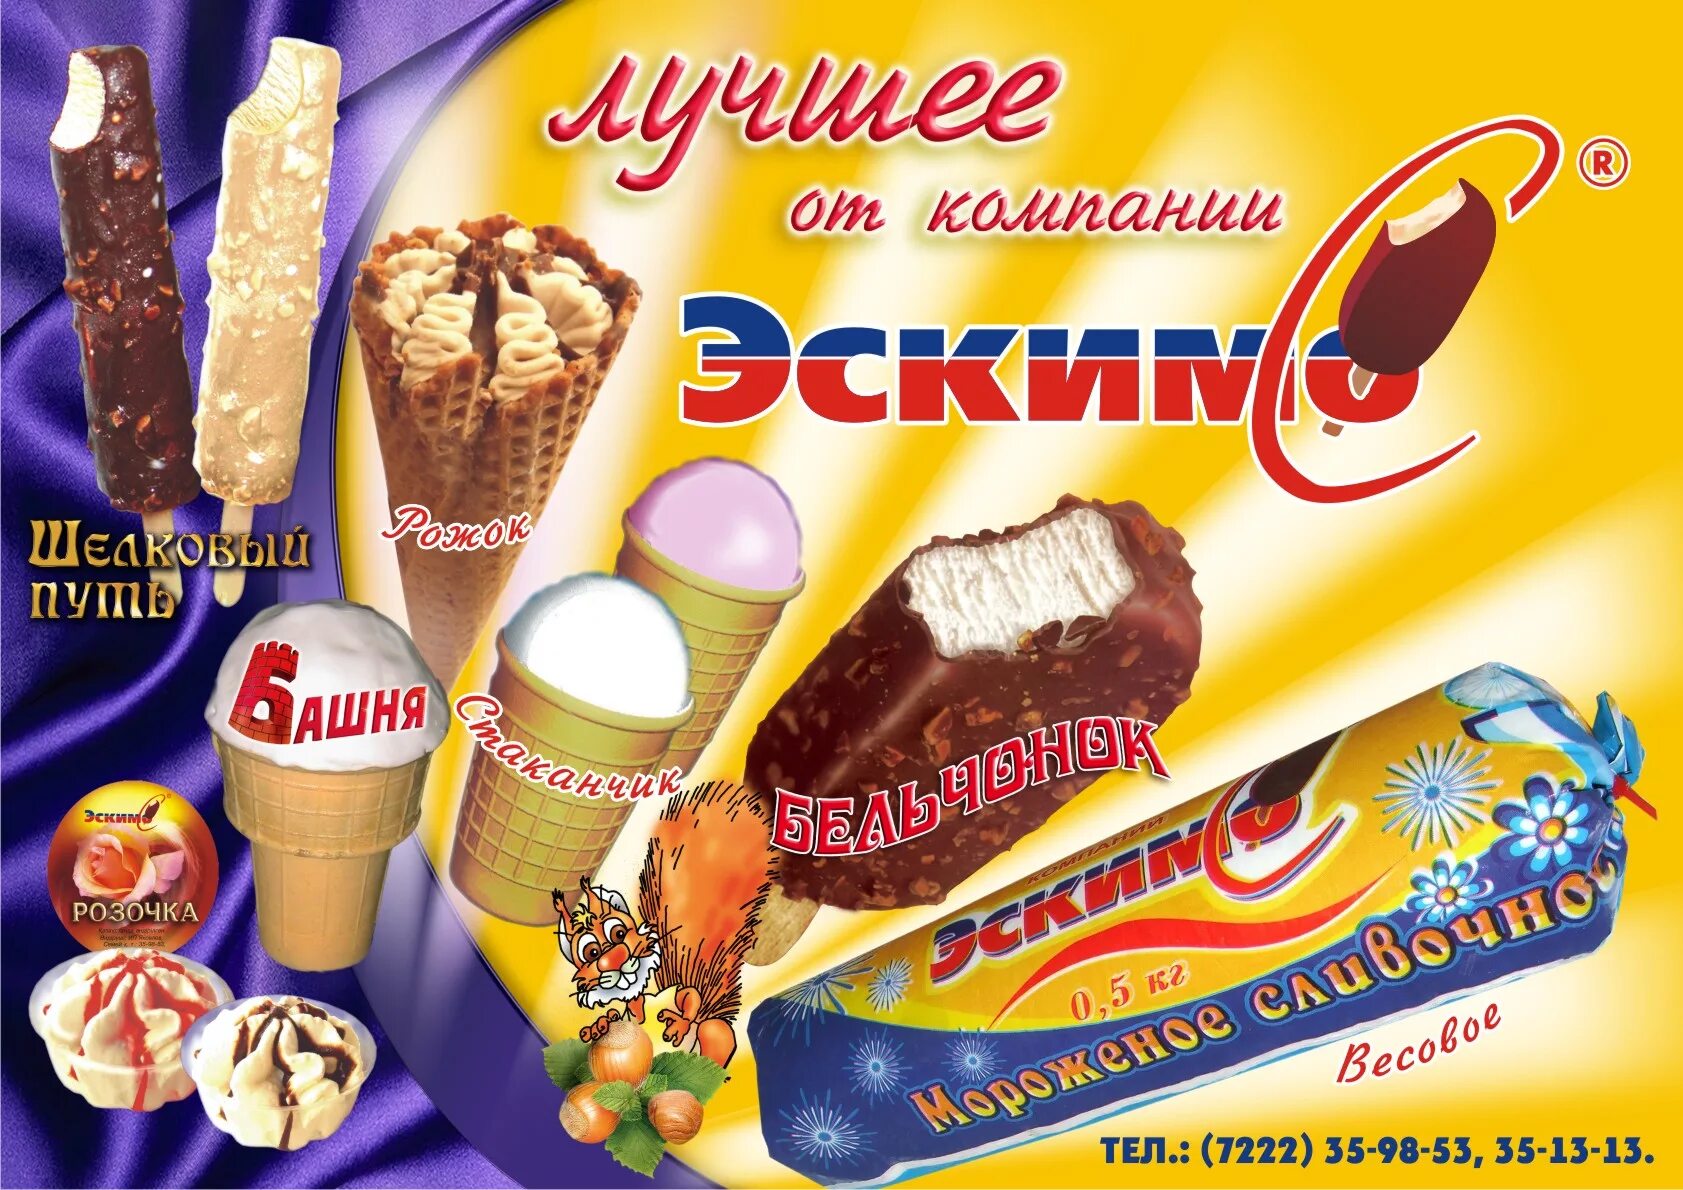 Реклама мороженого. Рекламный баннер мороженого. Мороженое баннер. Реклама мороженого баннер.